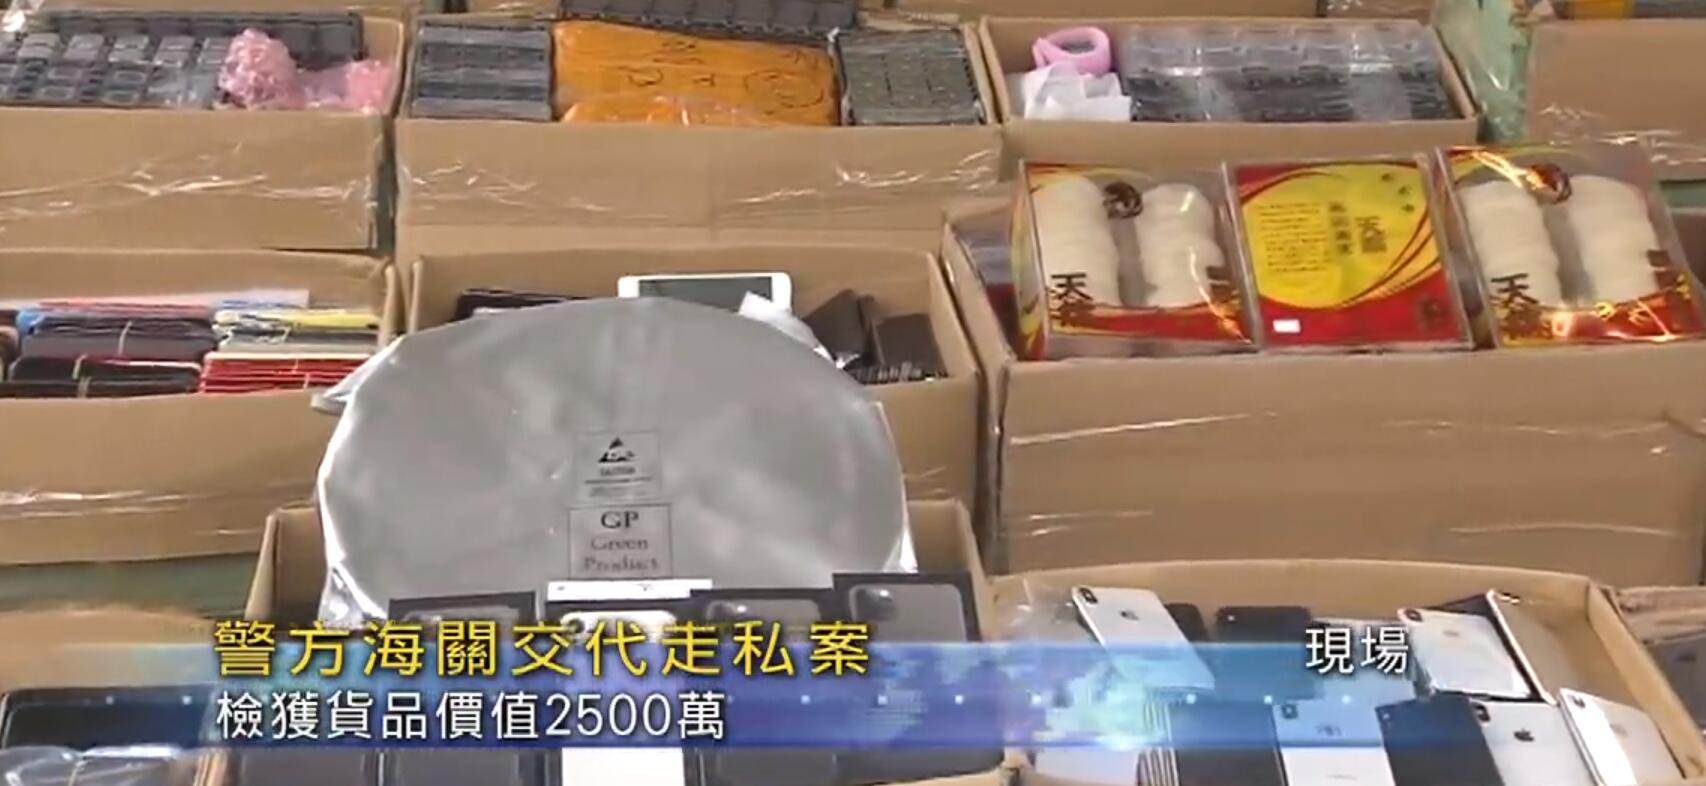 香港海關聯同警方聯合行動破兩年來最大宗電子產品走私案C]電視截圖^